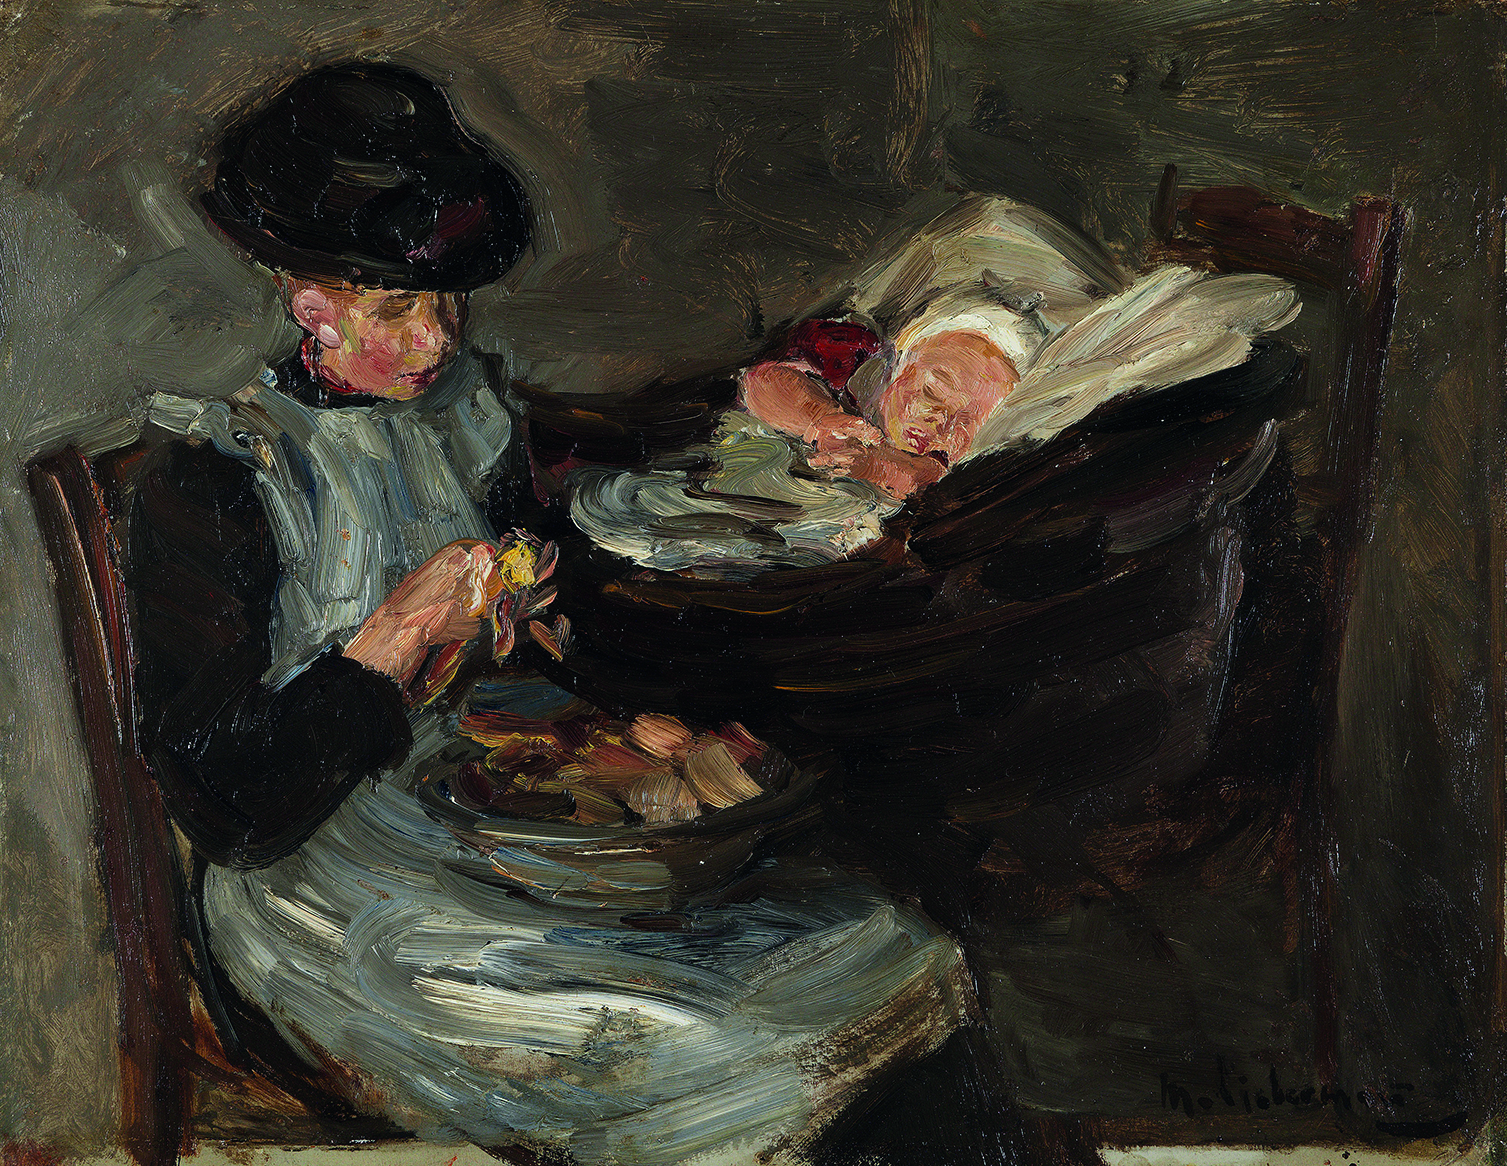 Max Liebermann (1847-1935). Mädchen aus Laren beim Kartoffelschälen neben schlafendem Kind im Korb, um 1887. Sammlung Museum Kunst der Westküste, Alkersum Föhr